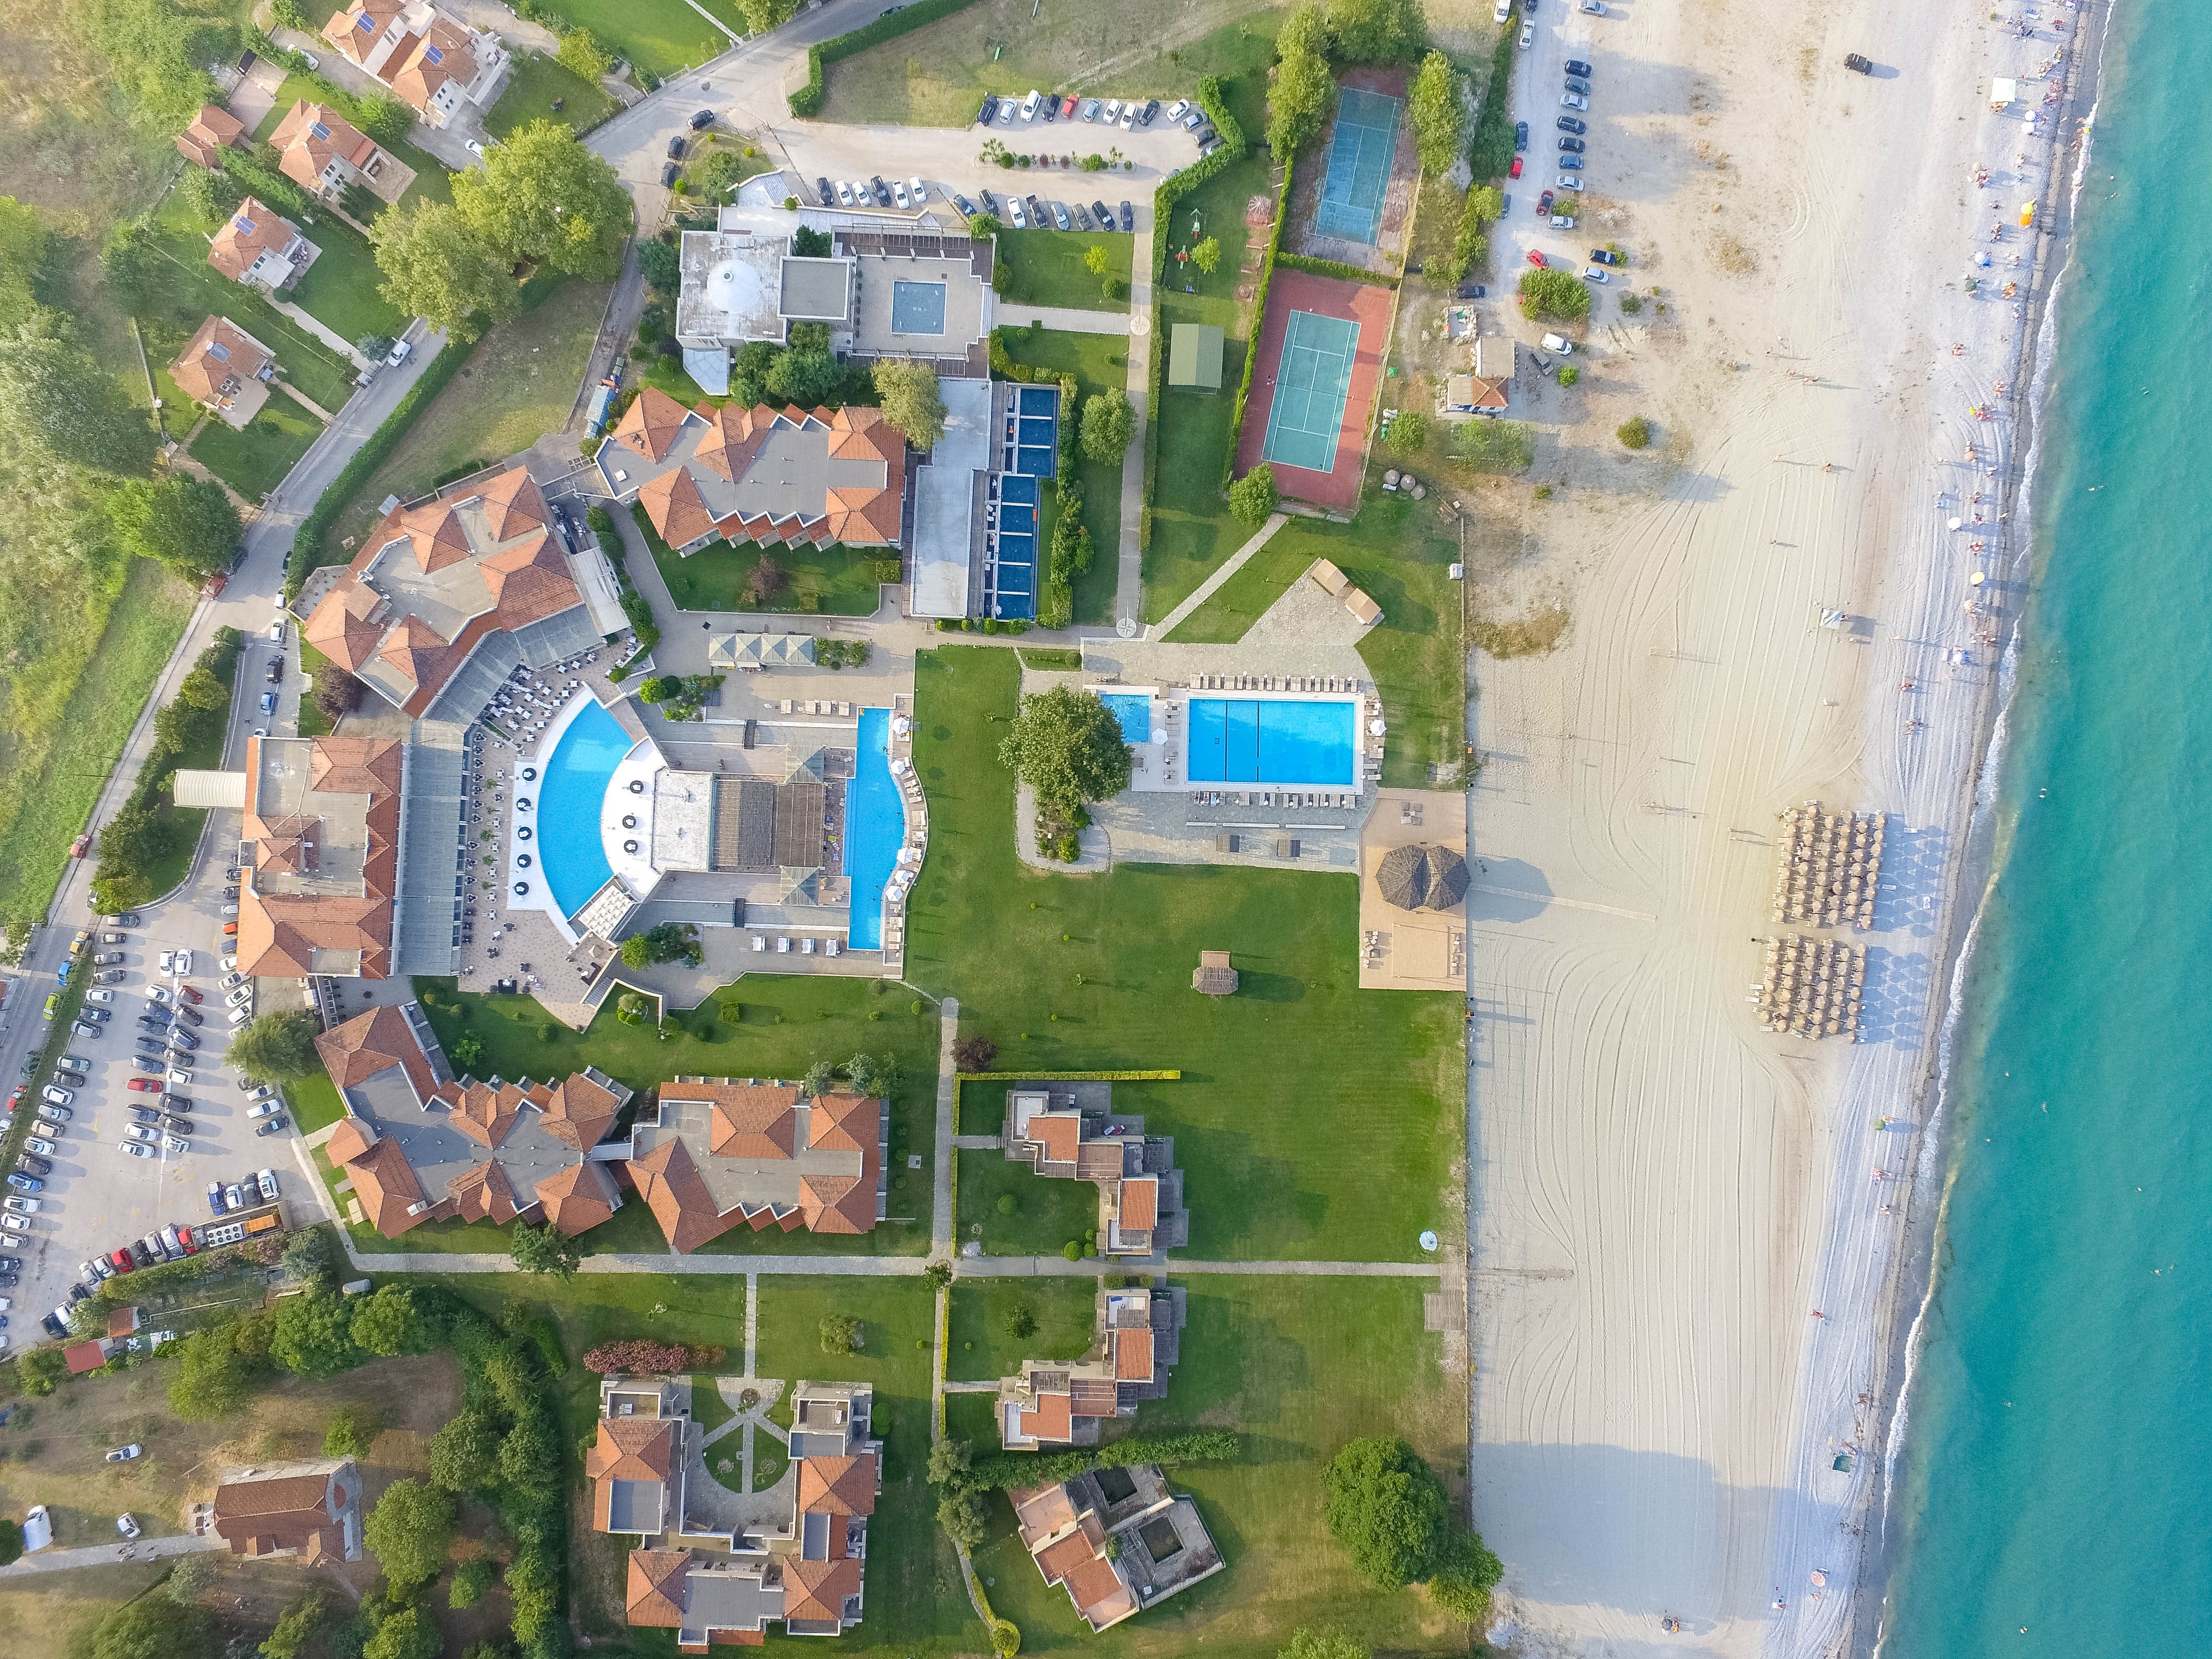 5* Dion Palace Luxury Resort & Spa - Λιτόχωρο ✦ -50% ✦ 3 Ημέρες (2 Διανυκτερεύσεις) ✦ 2 άτομα + 1 παιδί έως 12 ετών ✦ 8 ✦ 23/05/2023 έως 10/06/2023 και 18/09/2023 έως 30/09/2023 ✦ Μπροστά σε παραλία!